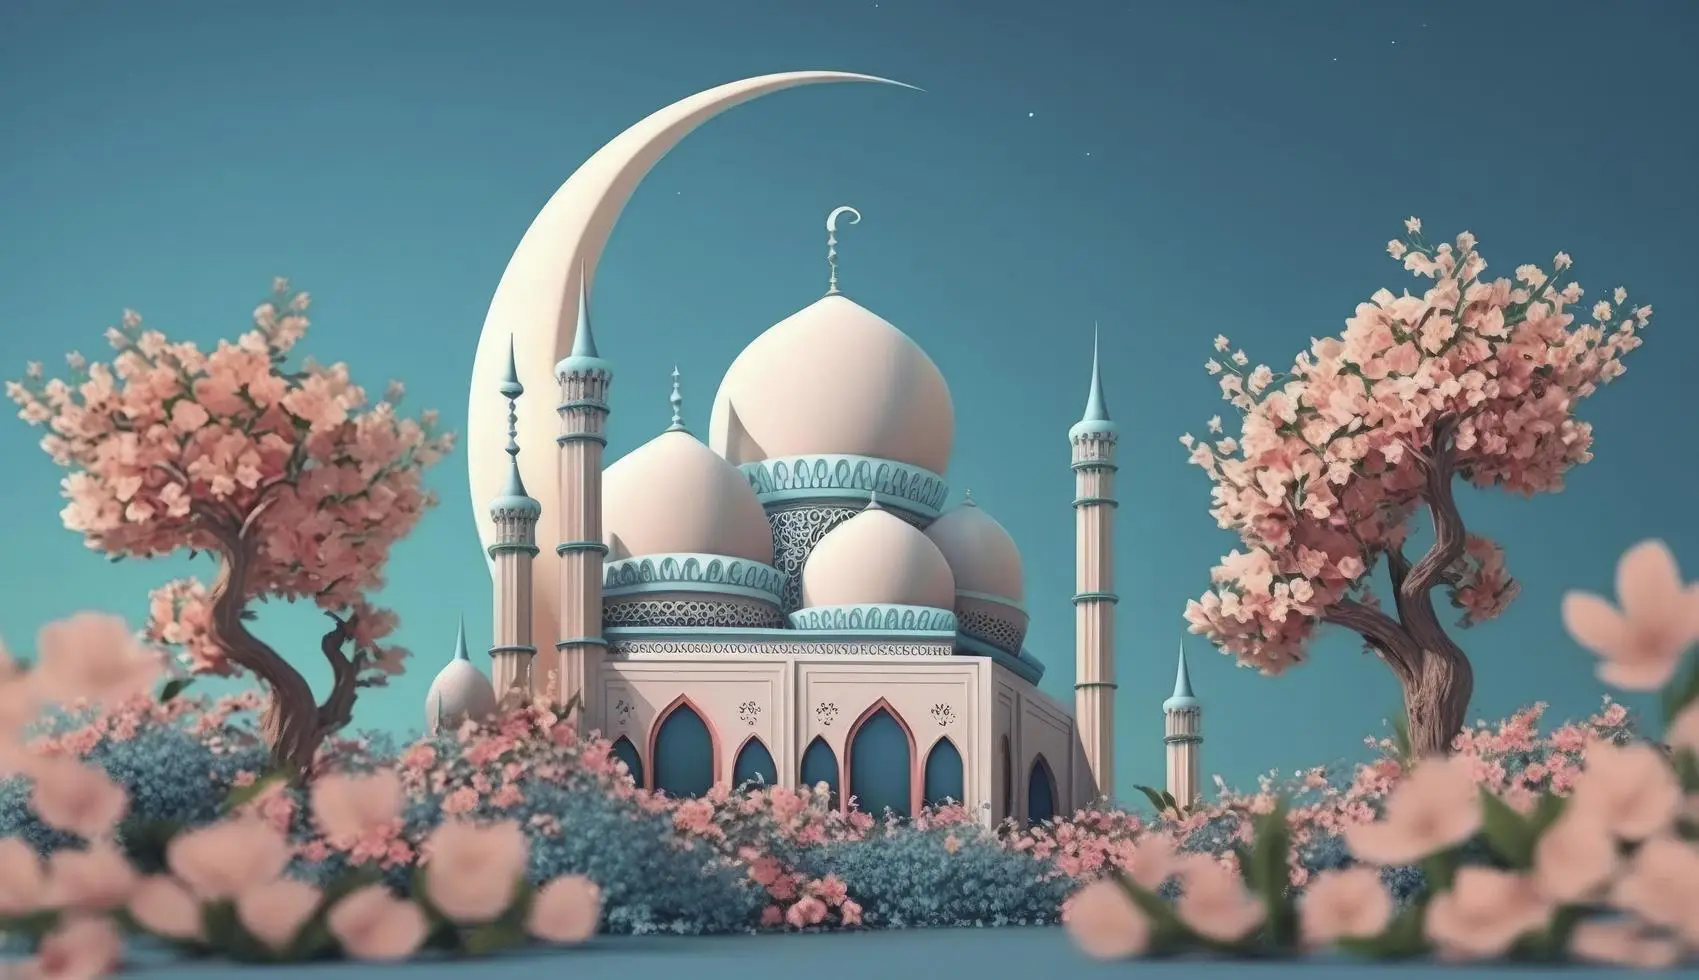 افضل 10 صور دينية islamic pictures wallpapers خلفيات اسلامية